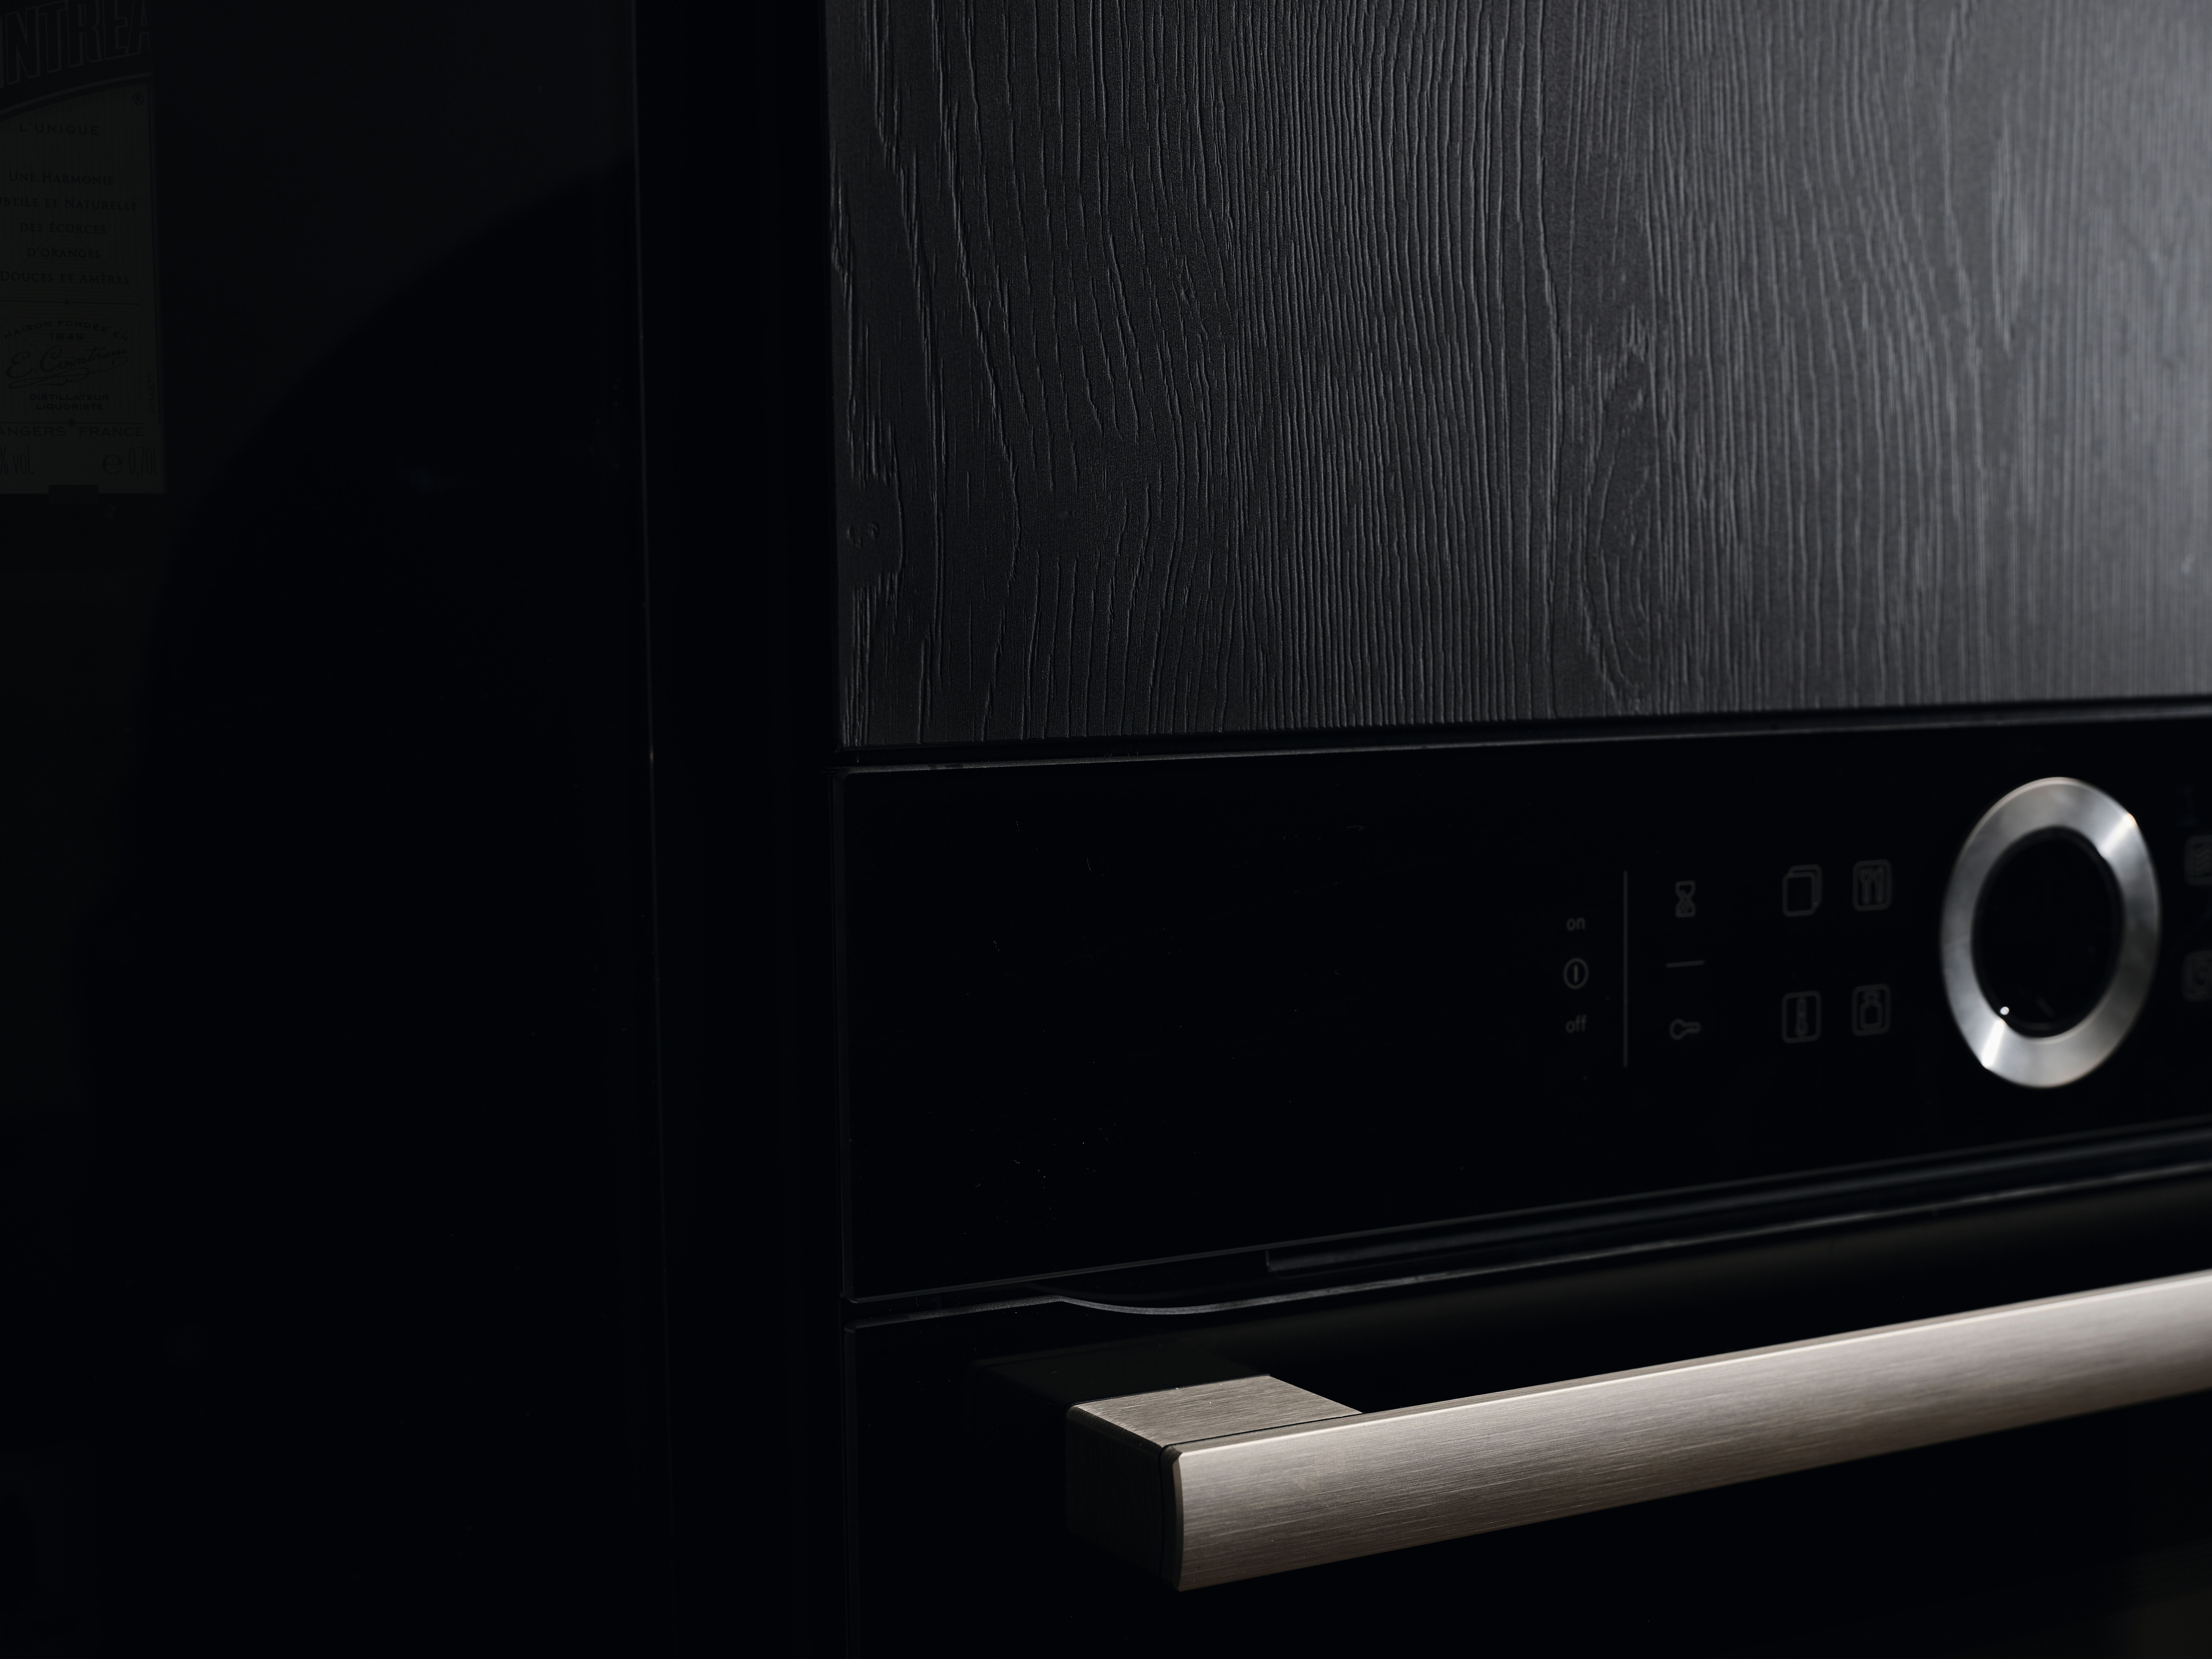 Специалната отразяваща природа на PerfectSense Feelwood U999 TM28 Black придава на тази кухня естествено изглеждаща елегантност.